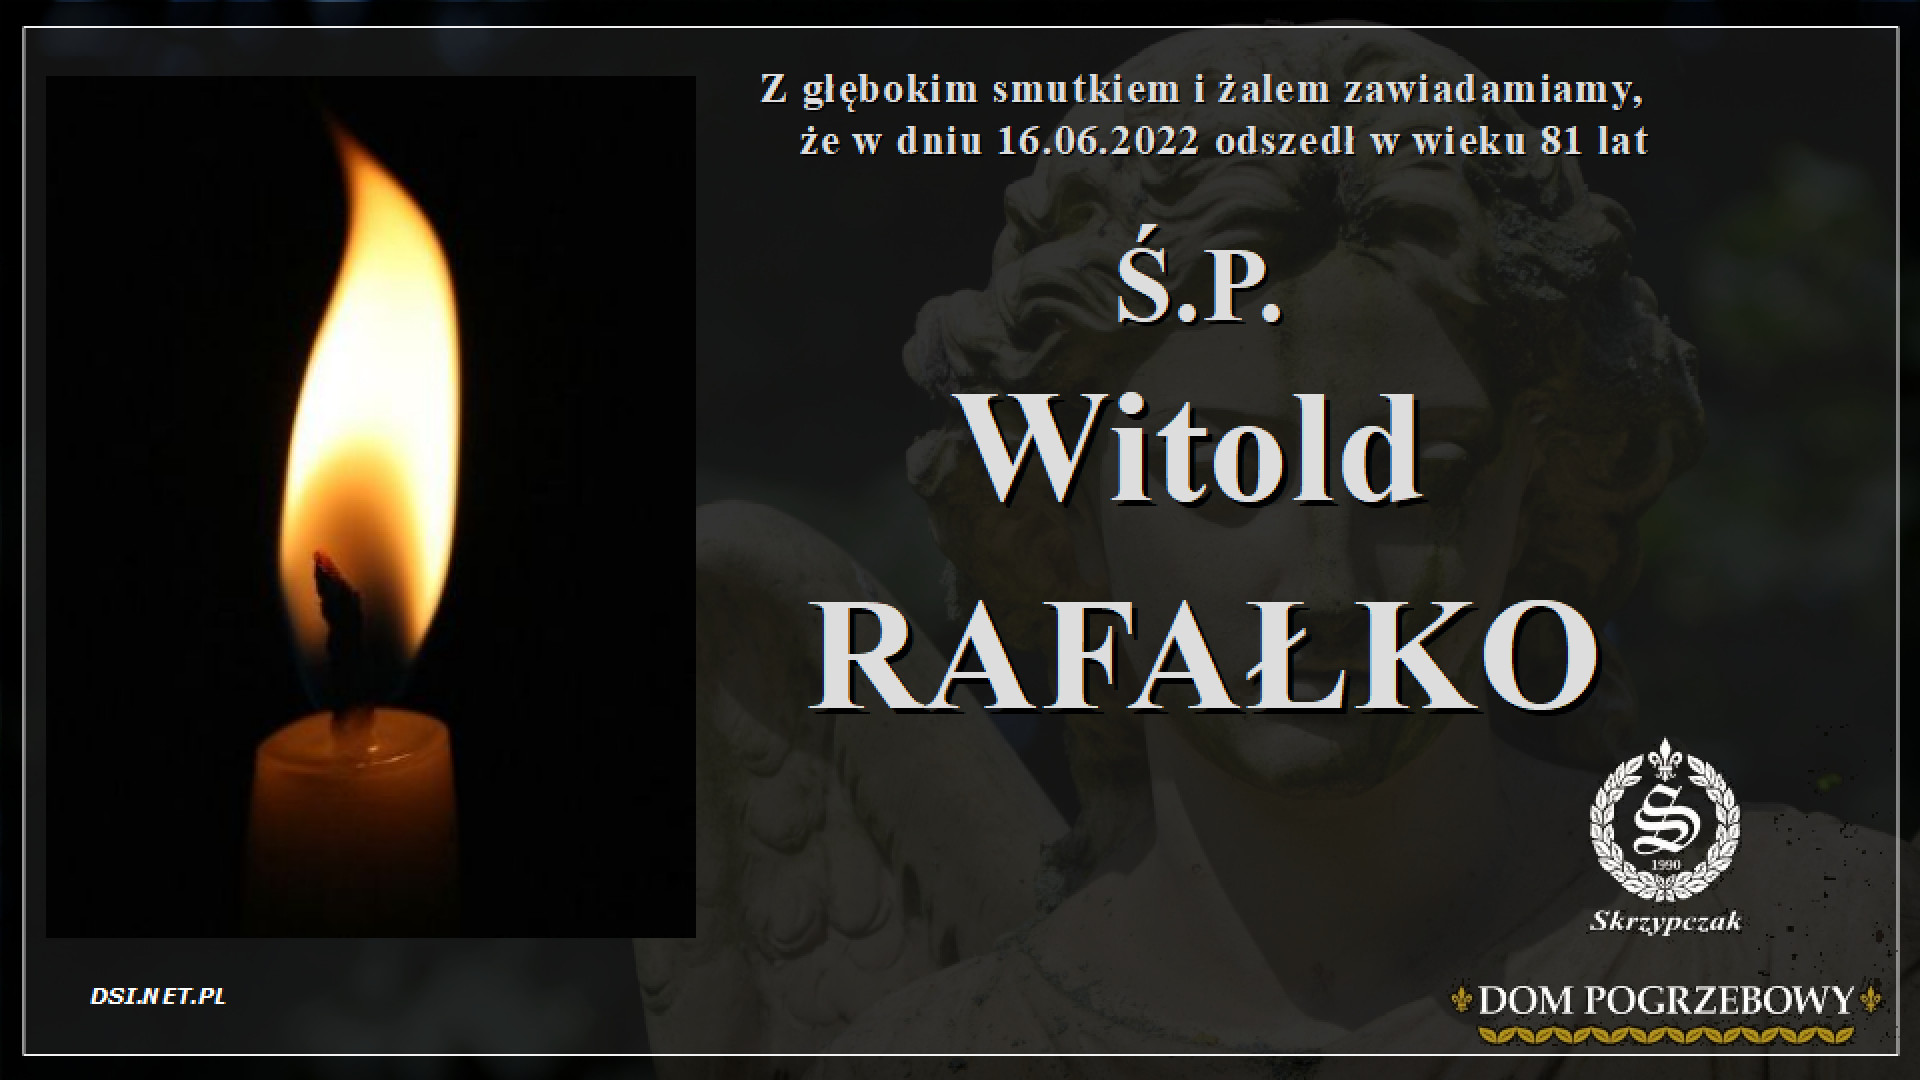 Ś.P. Witold Rafałko